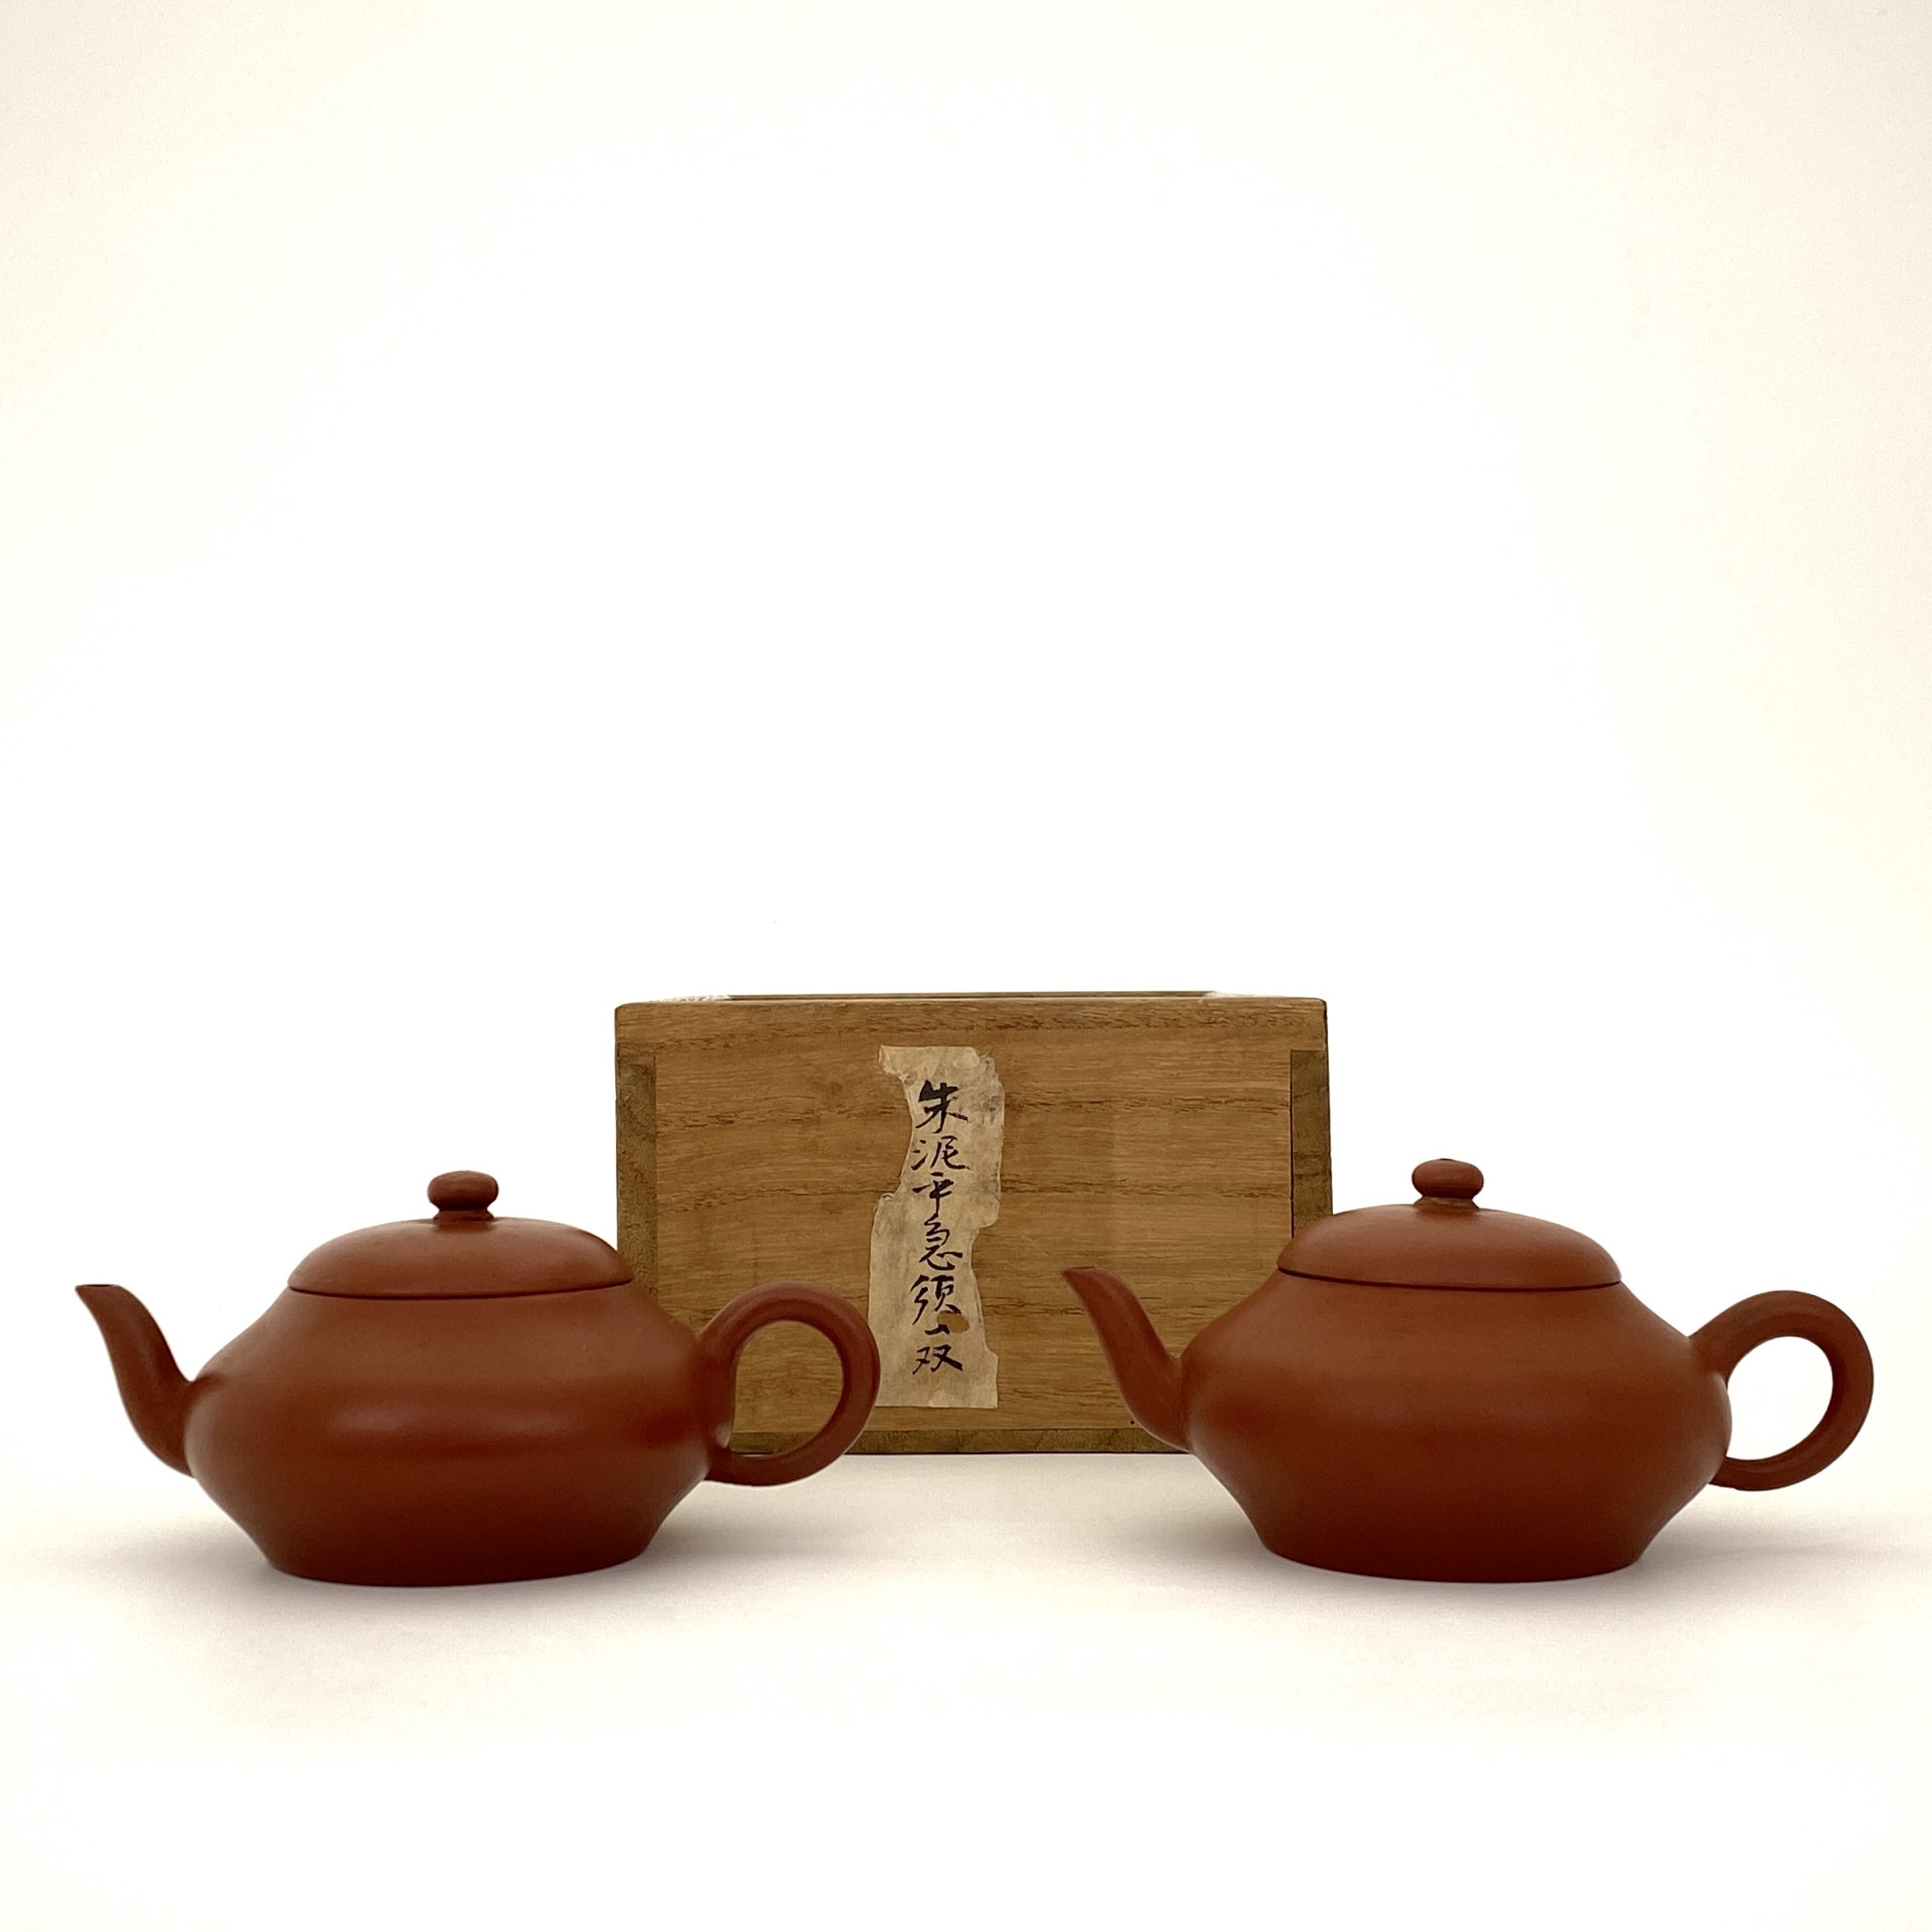 25081	清「孟臣」造 朱泥 茶壺 一対